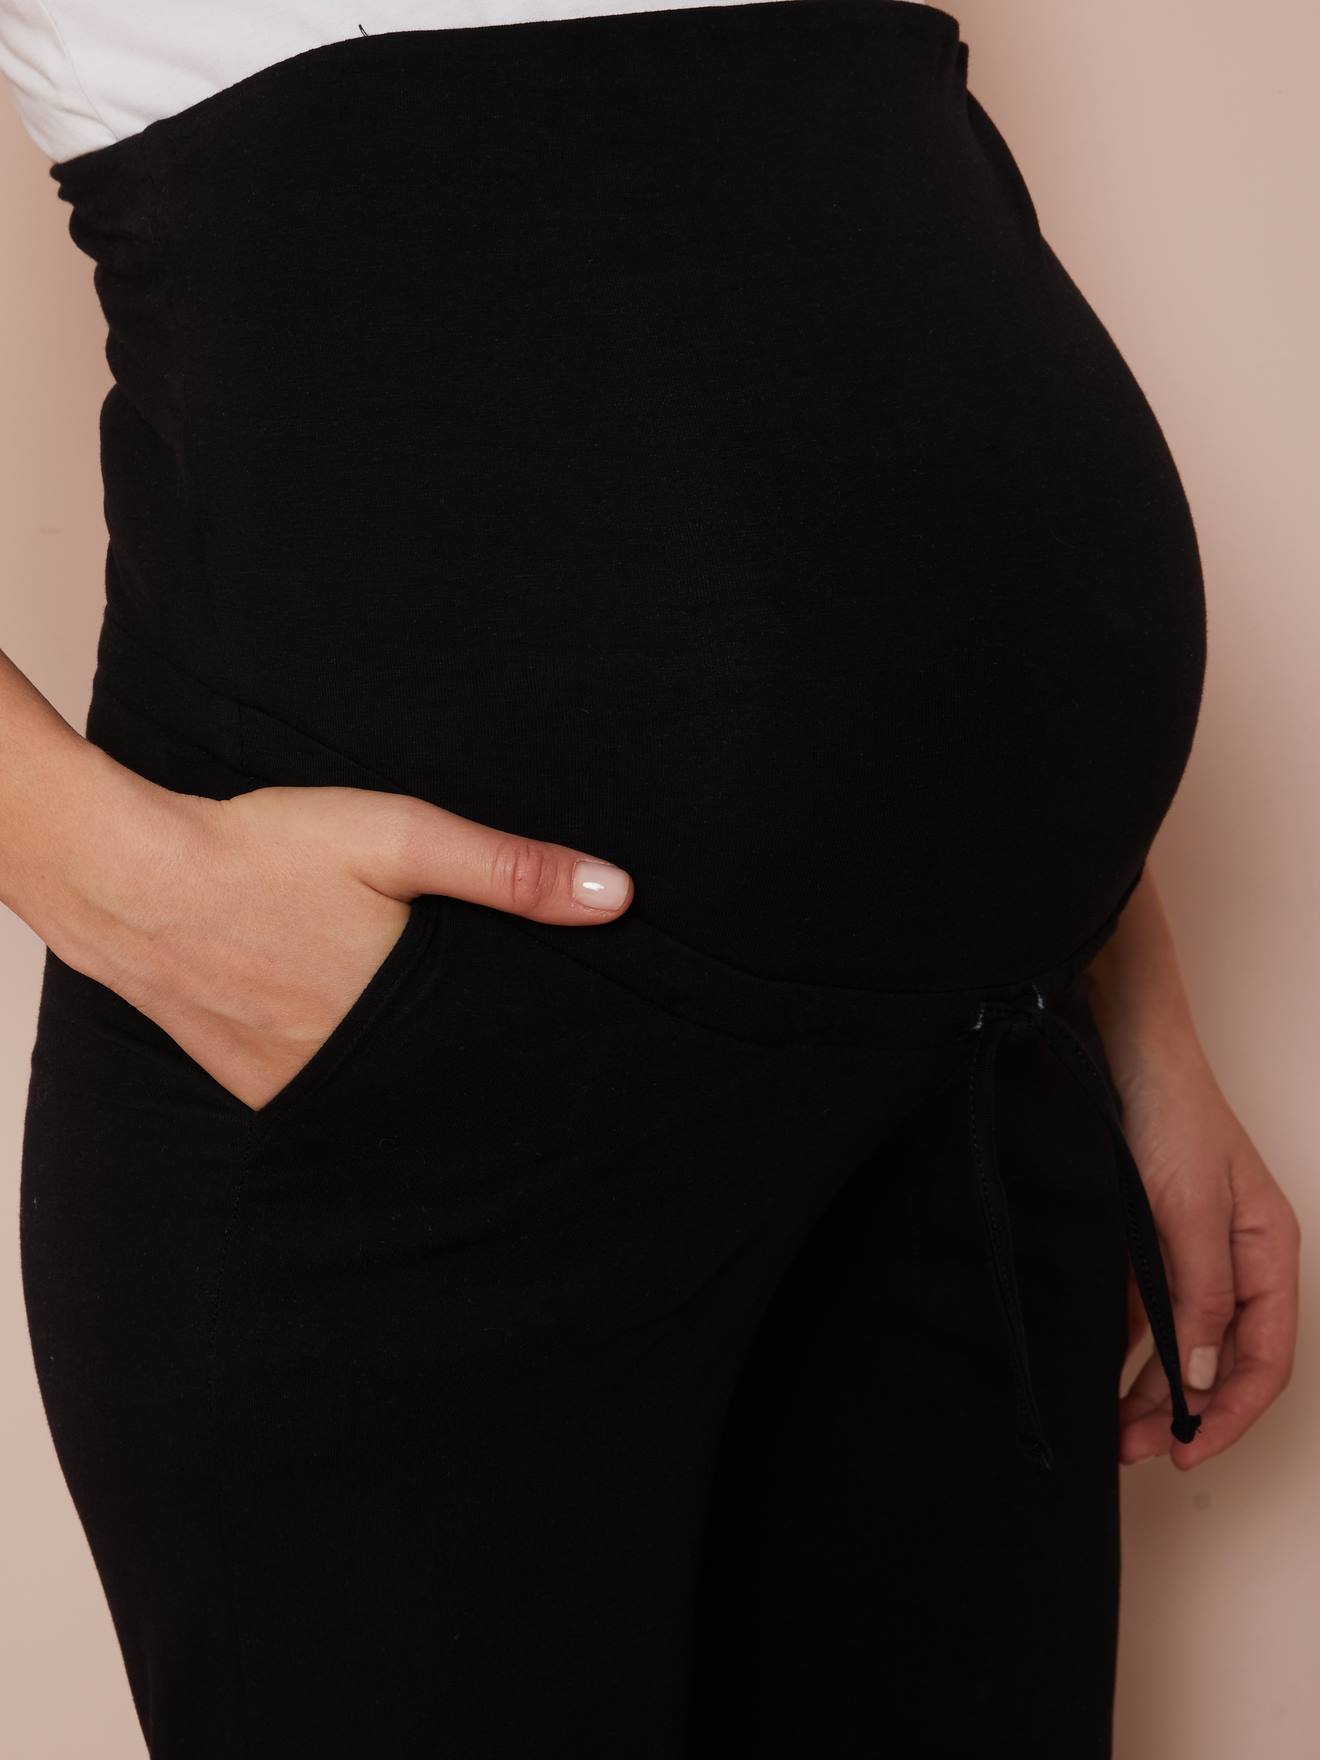 Calças de ioga para gravidez e pós-gravidez-Roupa grávida